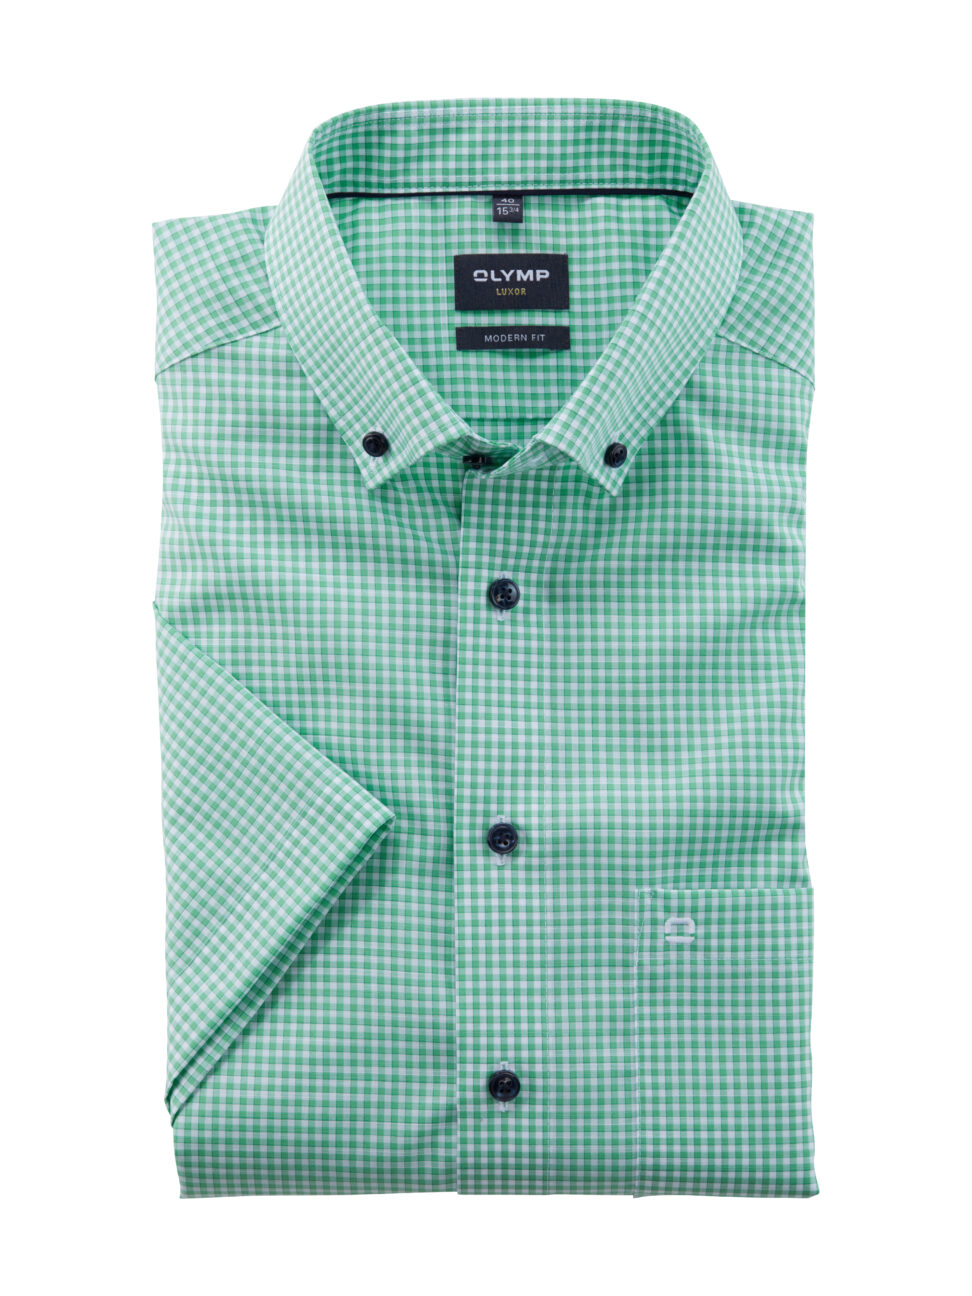 Koszula OLYMP Luxor, modern fit, Zielona krateczka/  Button-down / 12533240 krótki rękaw